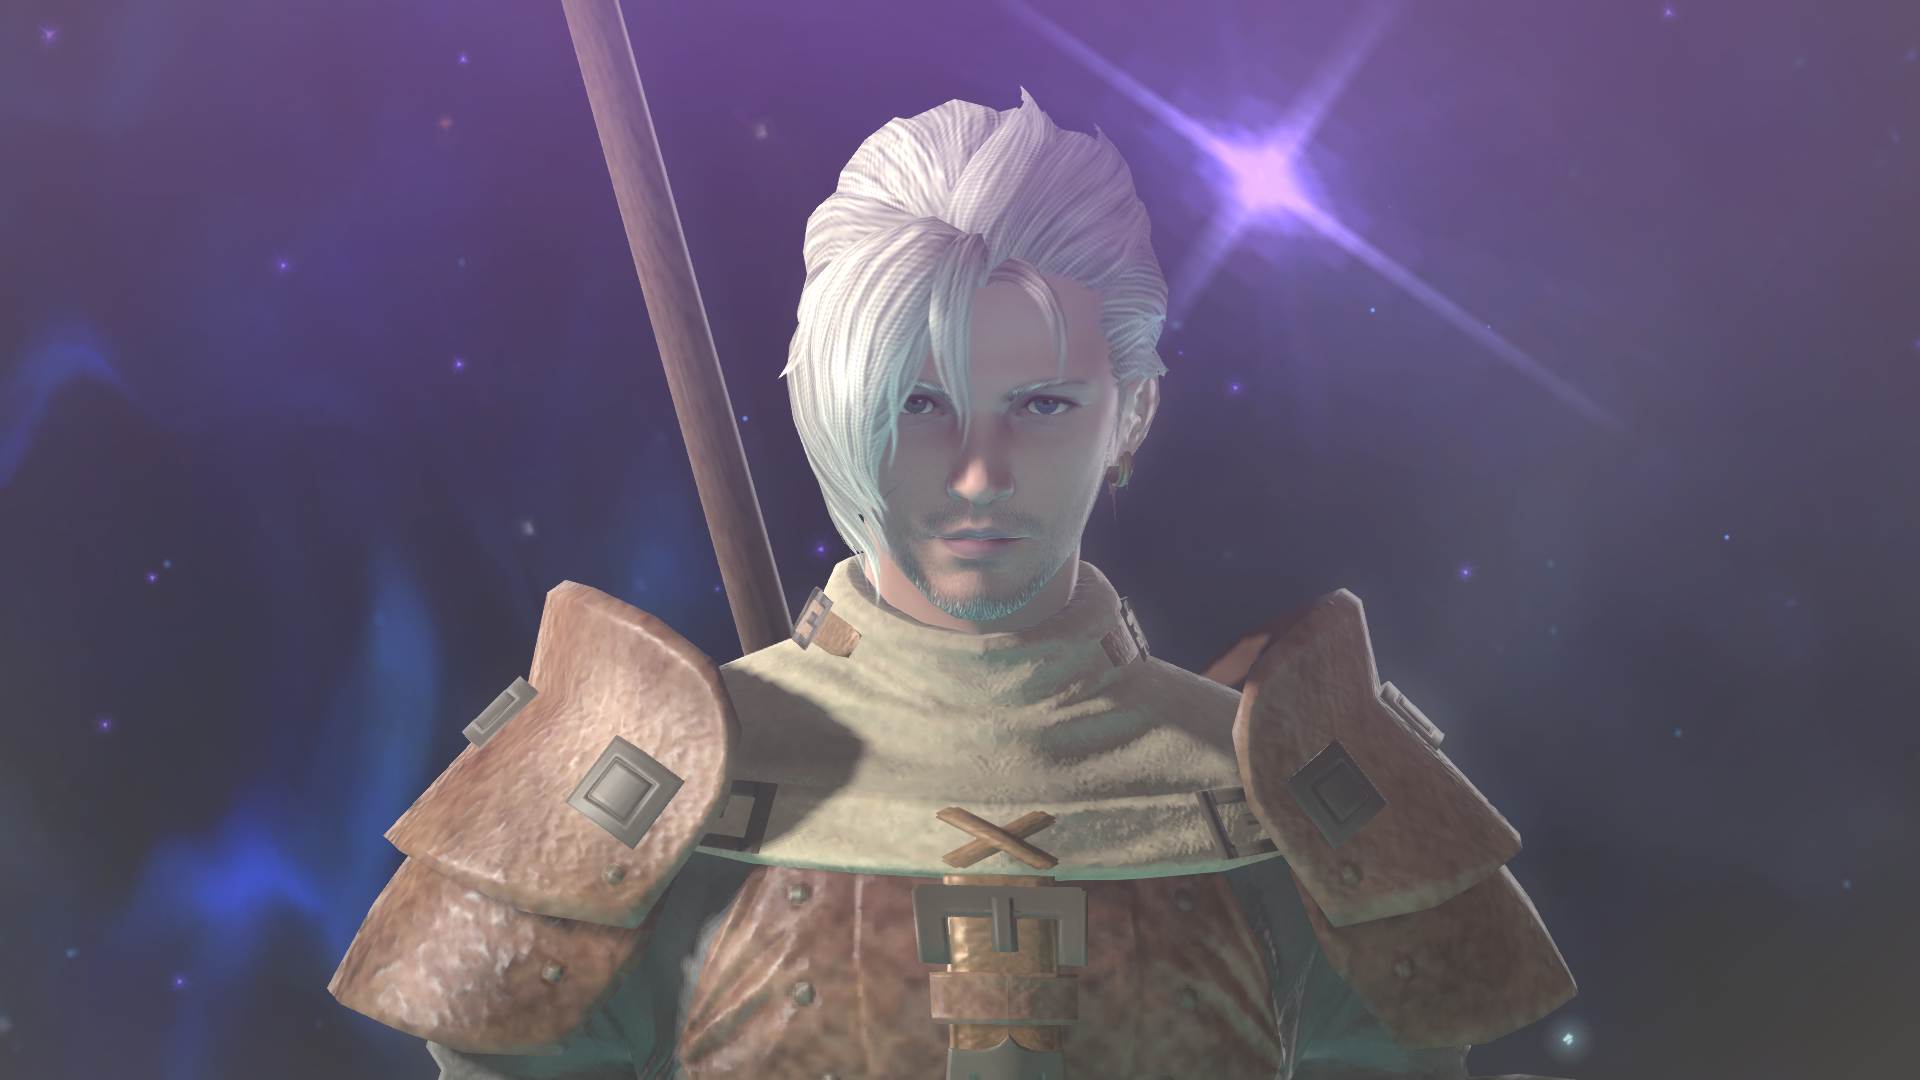 PRE-ORDER YJ Studios Final Fantasy VII Remake 1/1 Bust of Cloud Strife